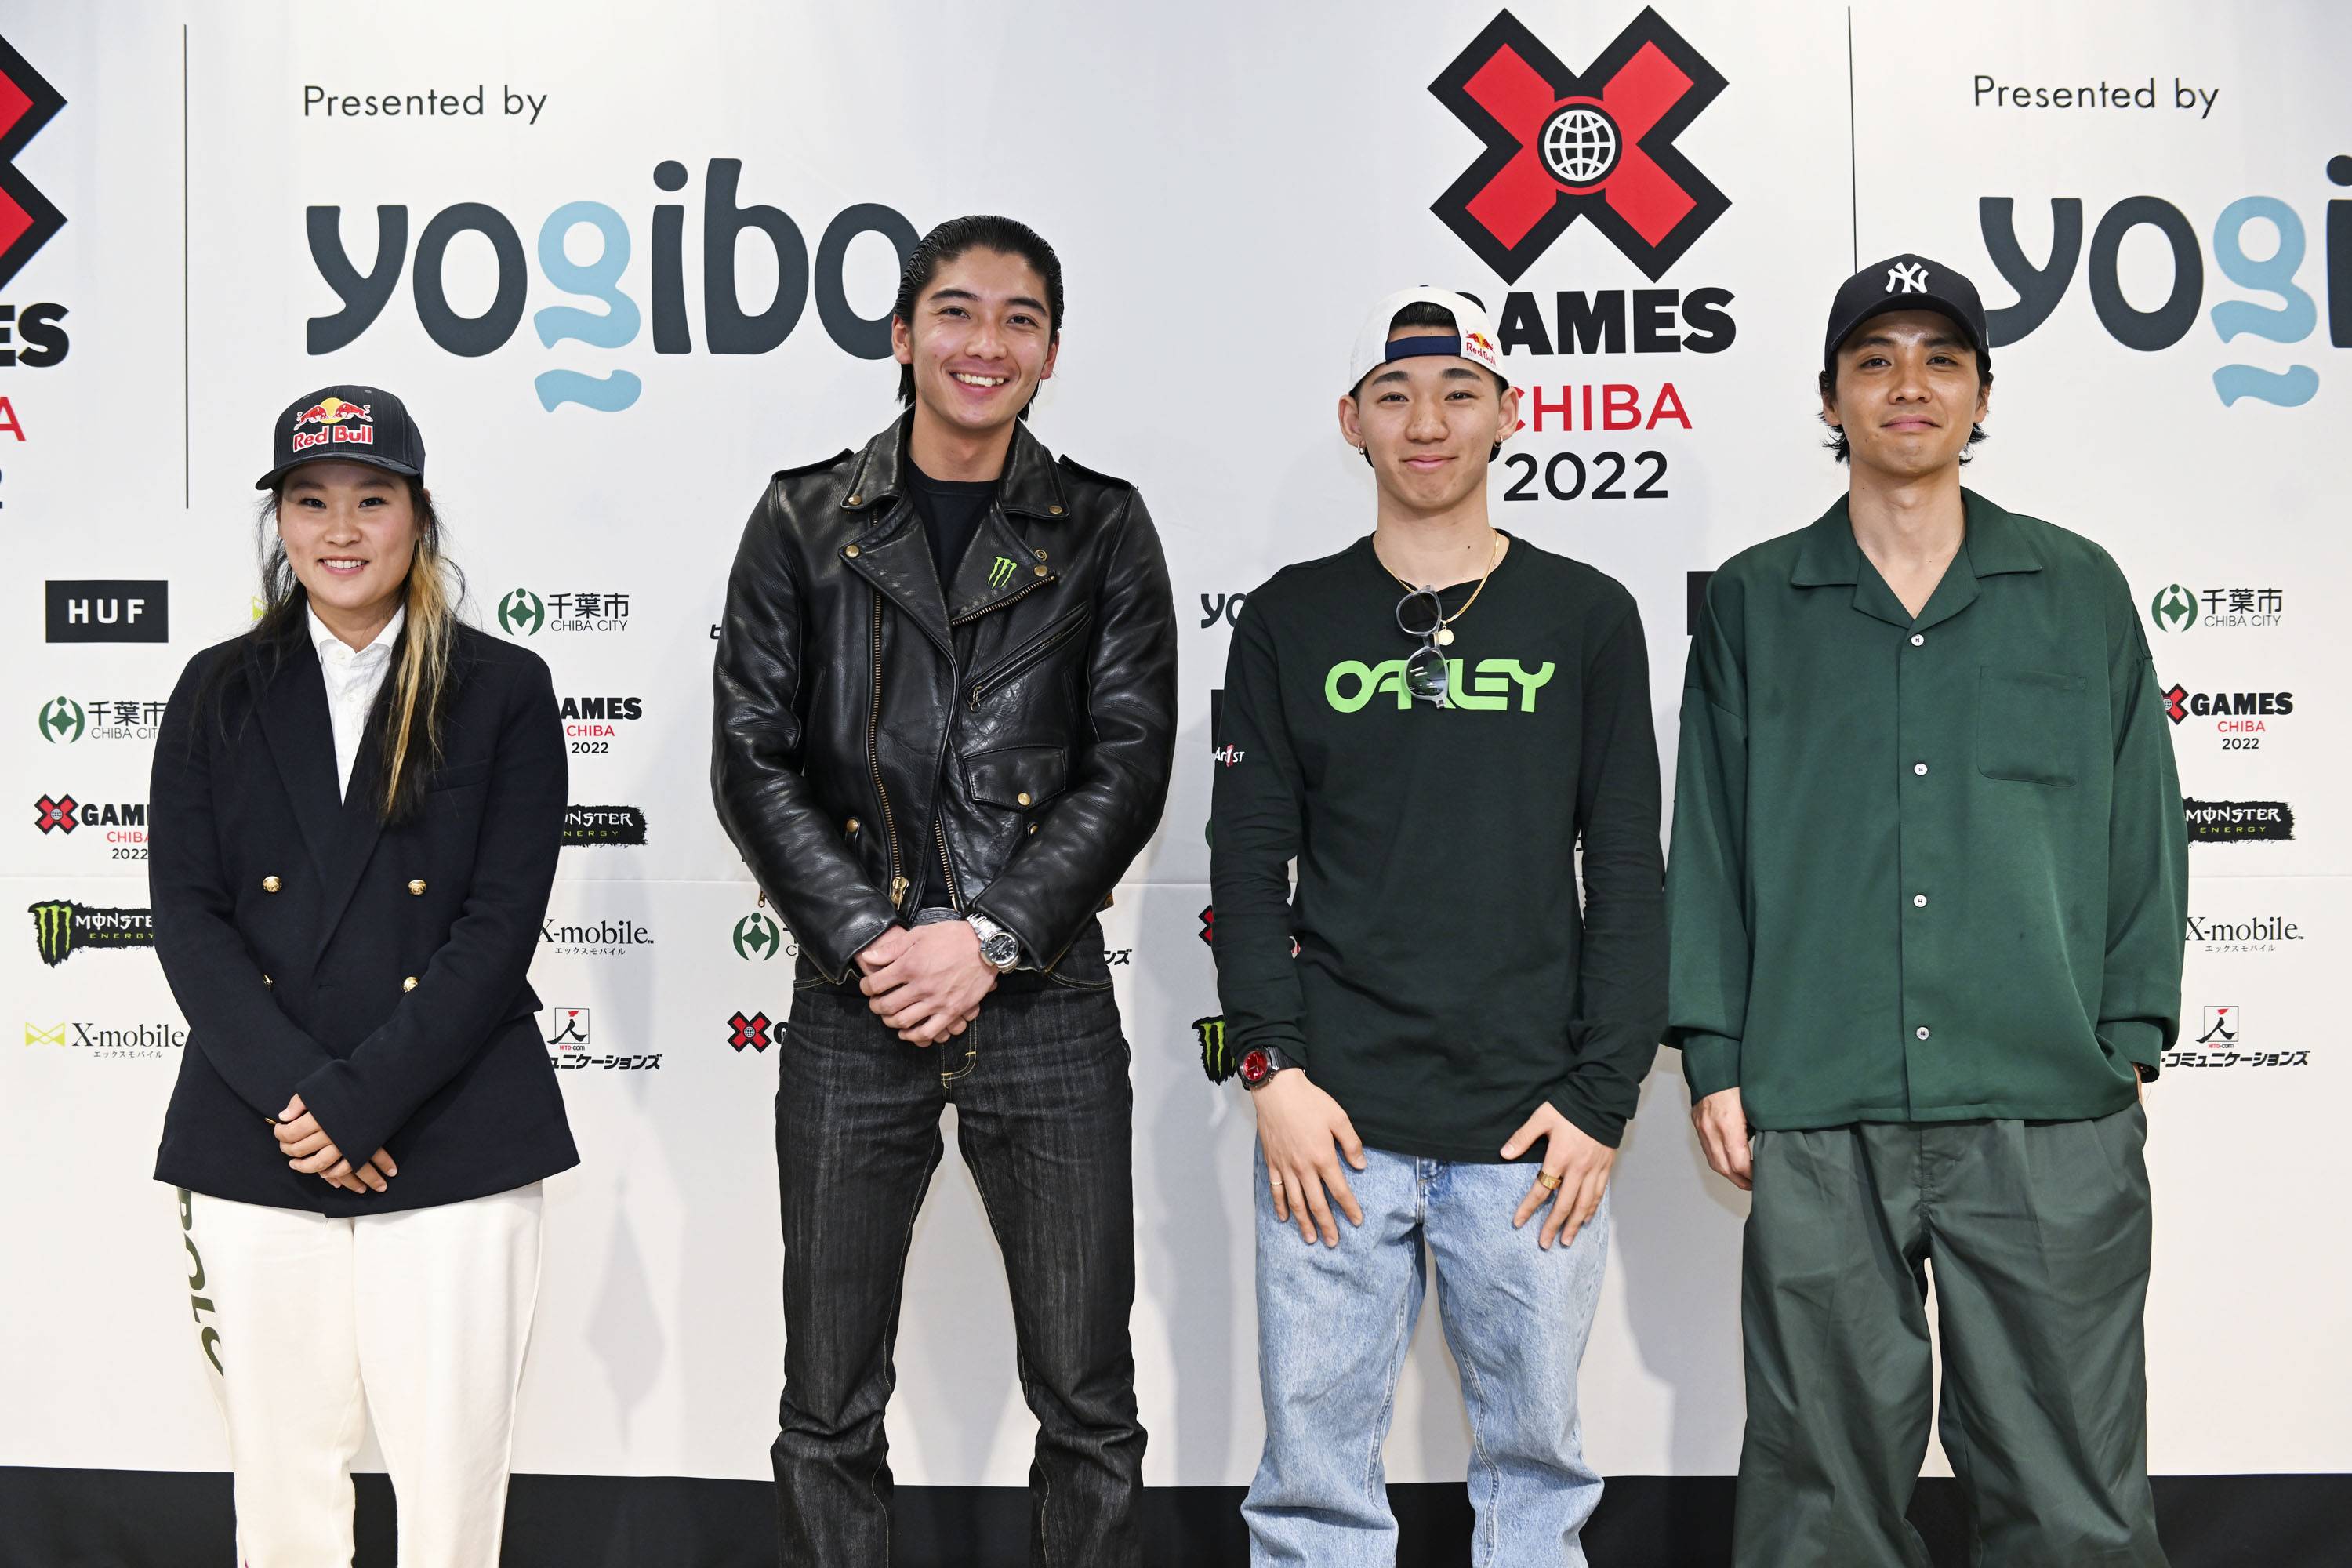 Japan Games Cast